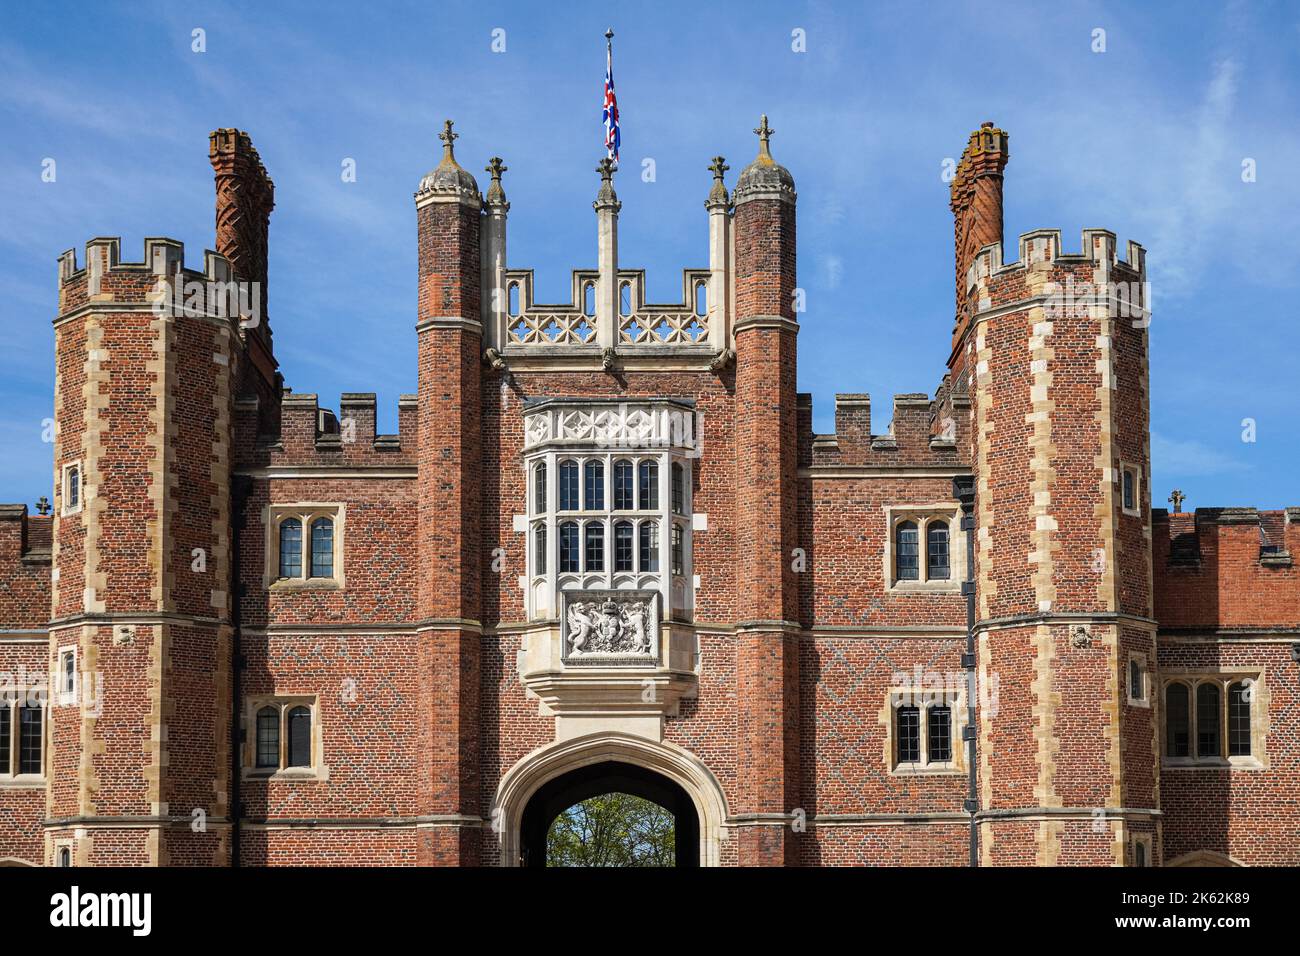 Le Grand Gatehouse Tudor à Hampton court Palace, vu de la base court, Richmond upon Thames, Londres, Angleterre Royaume-Uni Banque D'Images